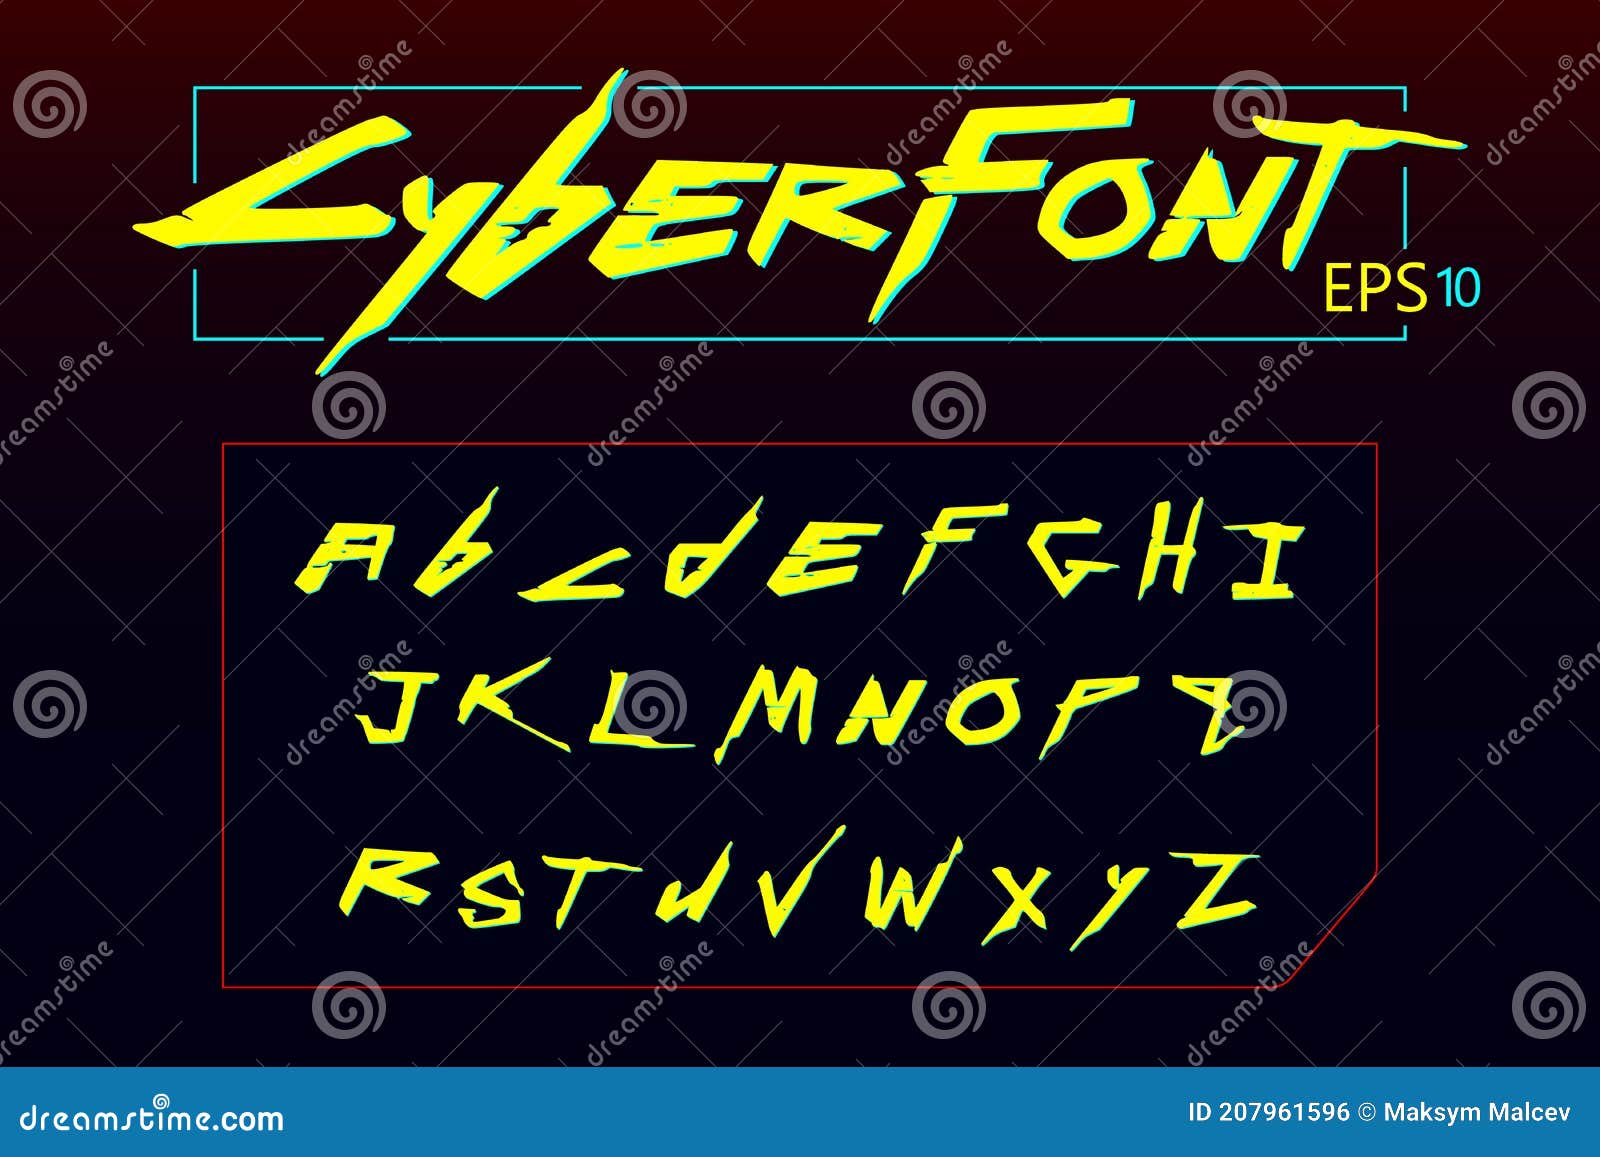 Cyberpunk fonts free фото 7